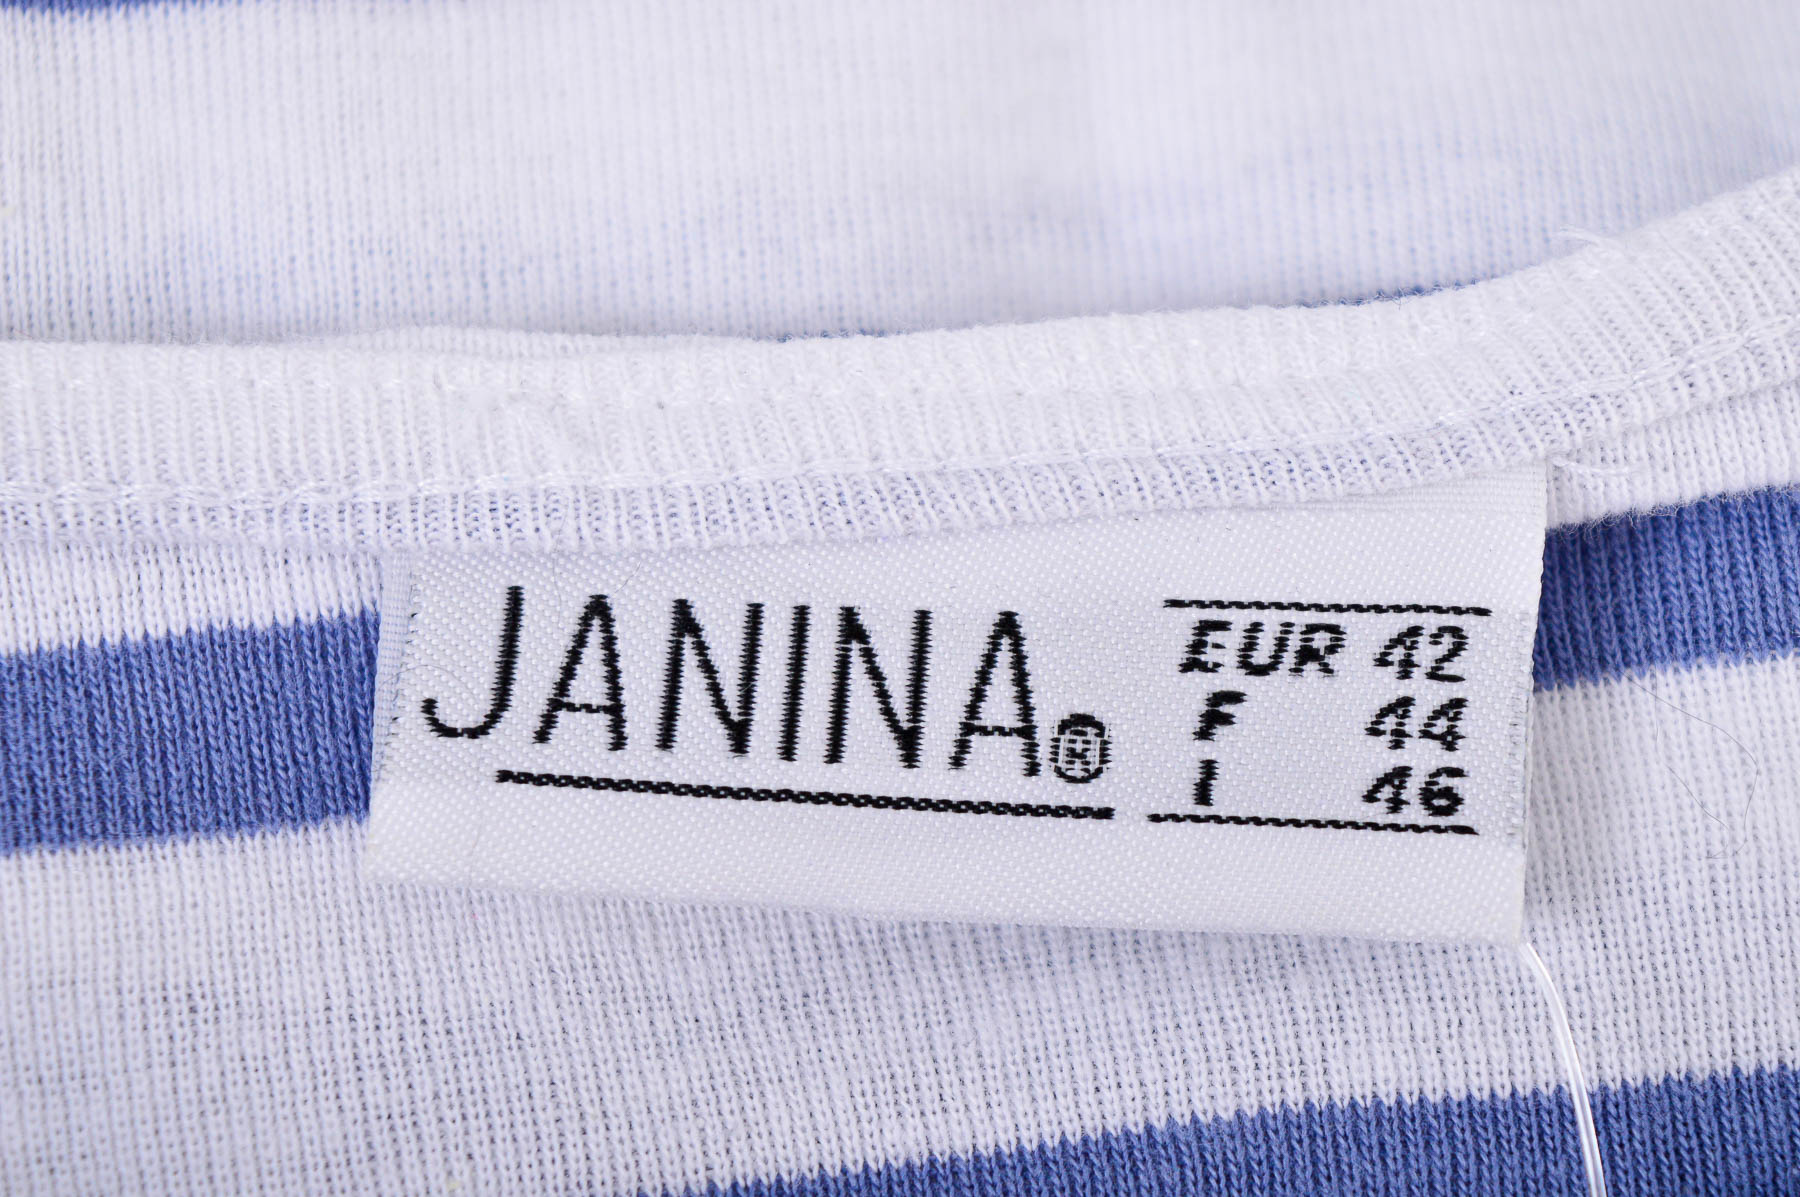 Women's sweater - Janina - 2